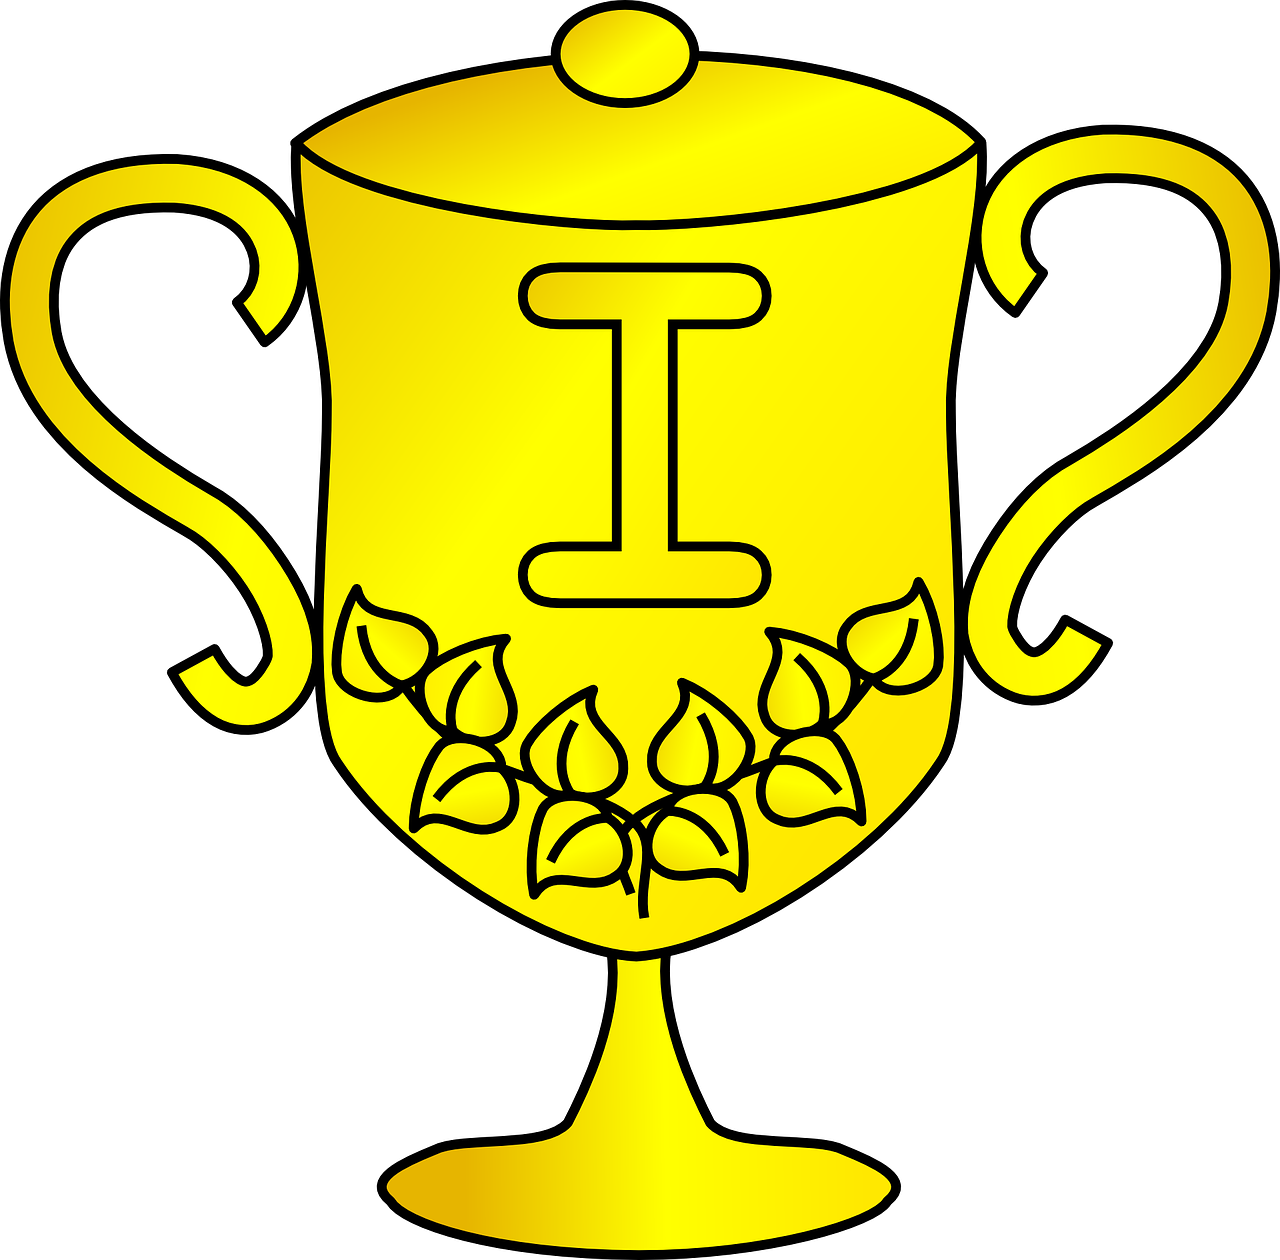 Trofėjus, Apdovanojimas, Auksinis, Nugalėtojas, Taurė, Čempionas, Premija, Pergalė, Pagarba, Sportas